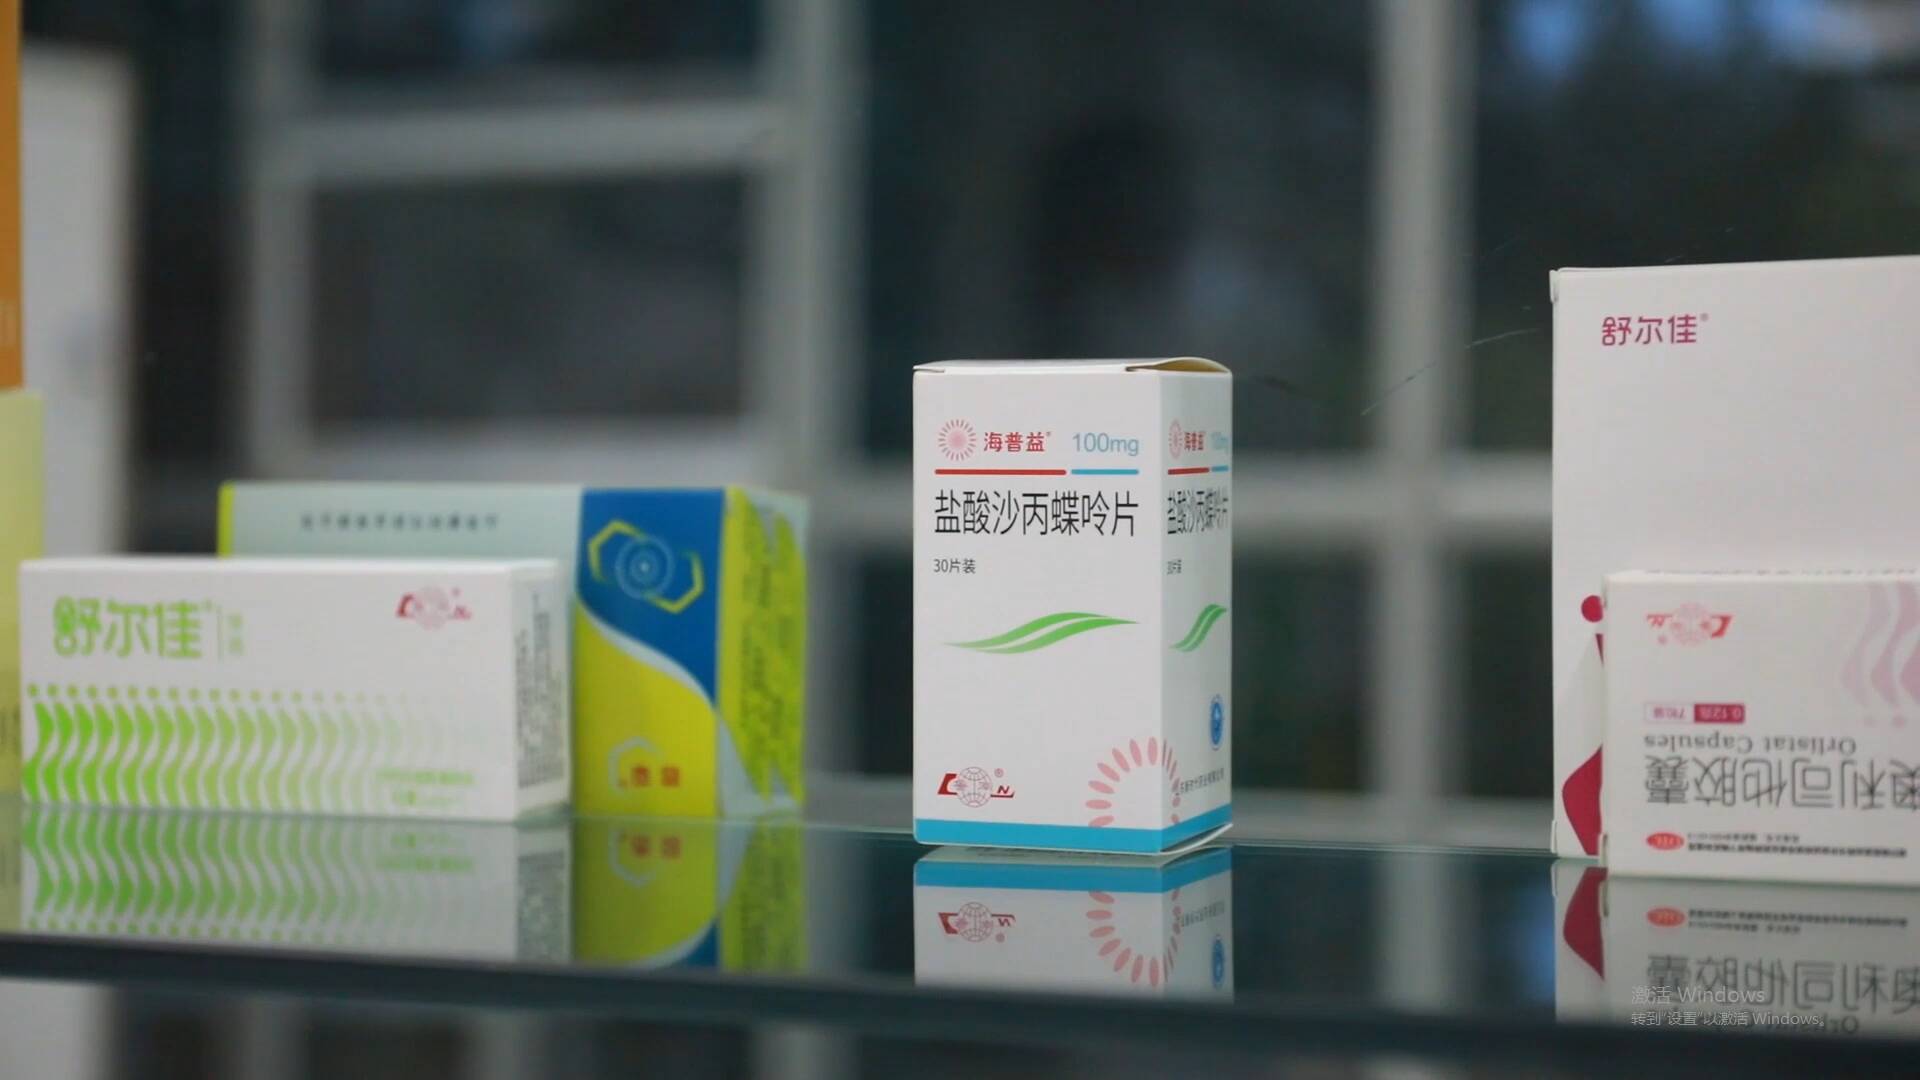 鲁南制药罕见病药物海普益盐酸沙丙蝶呤片生产上市